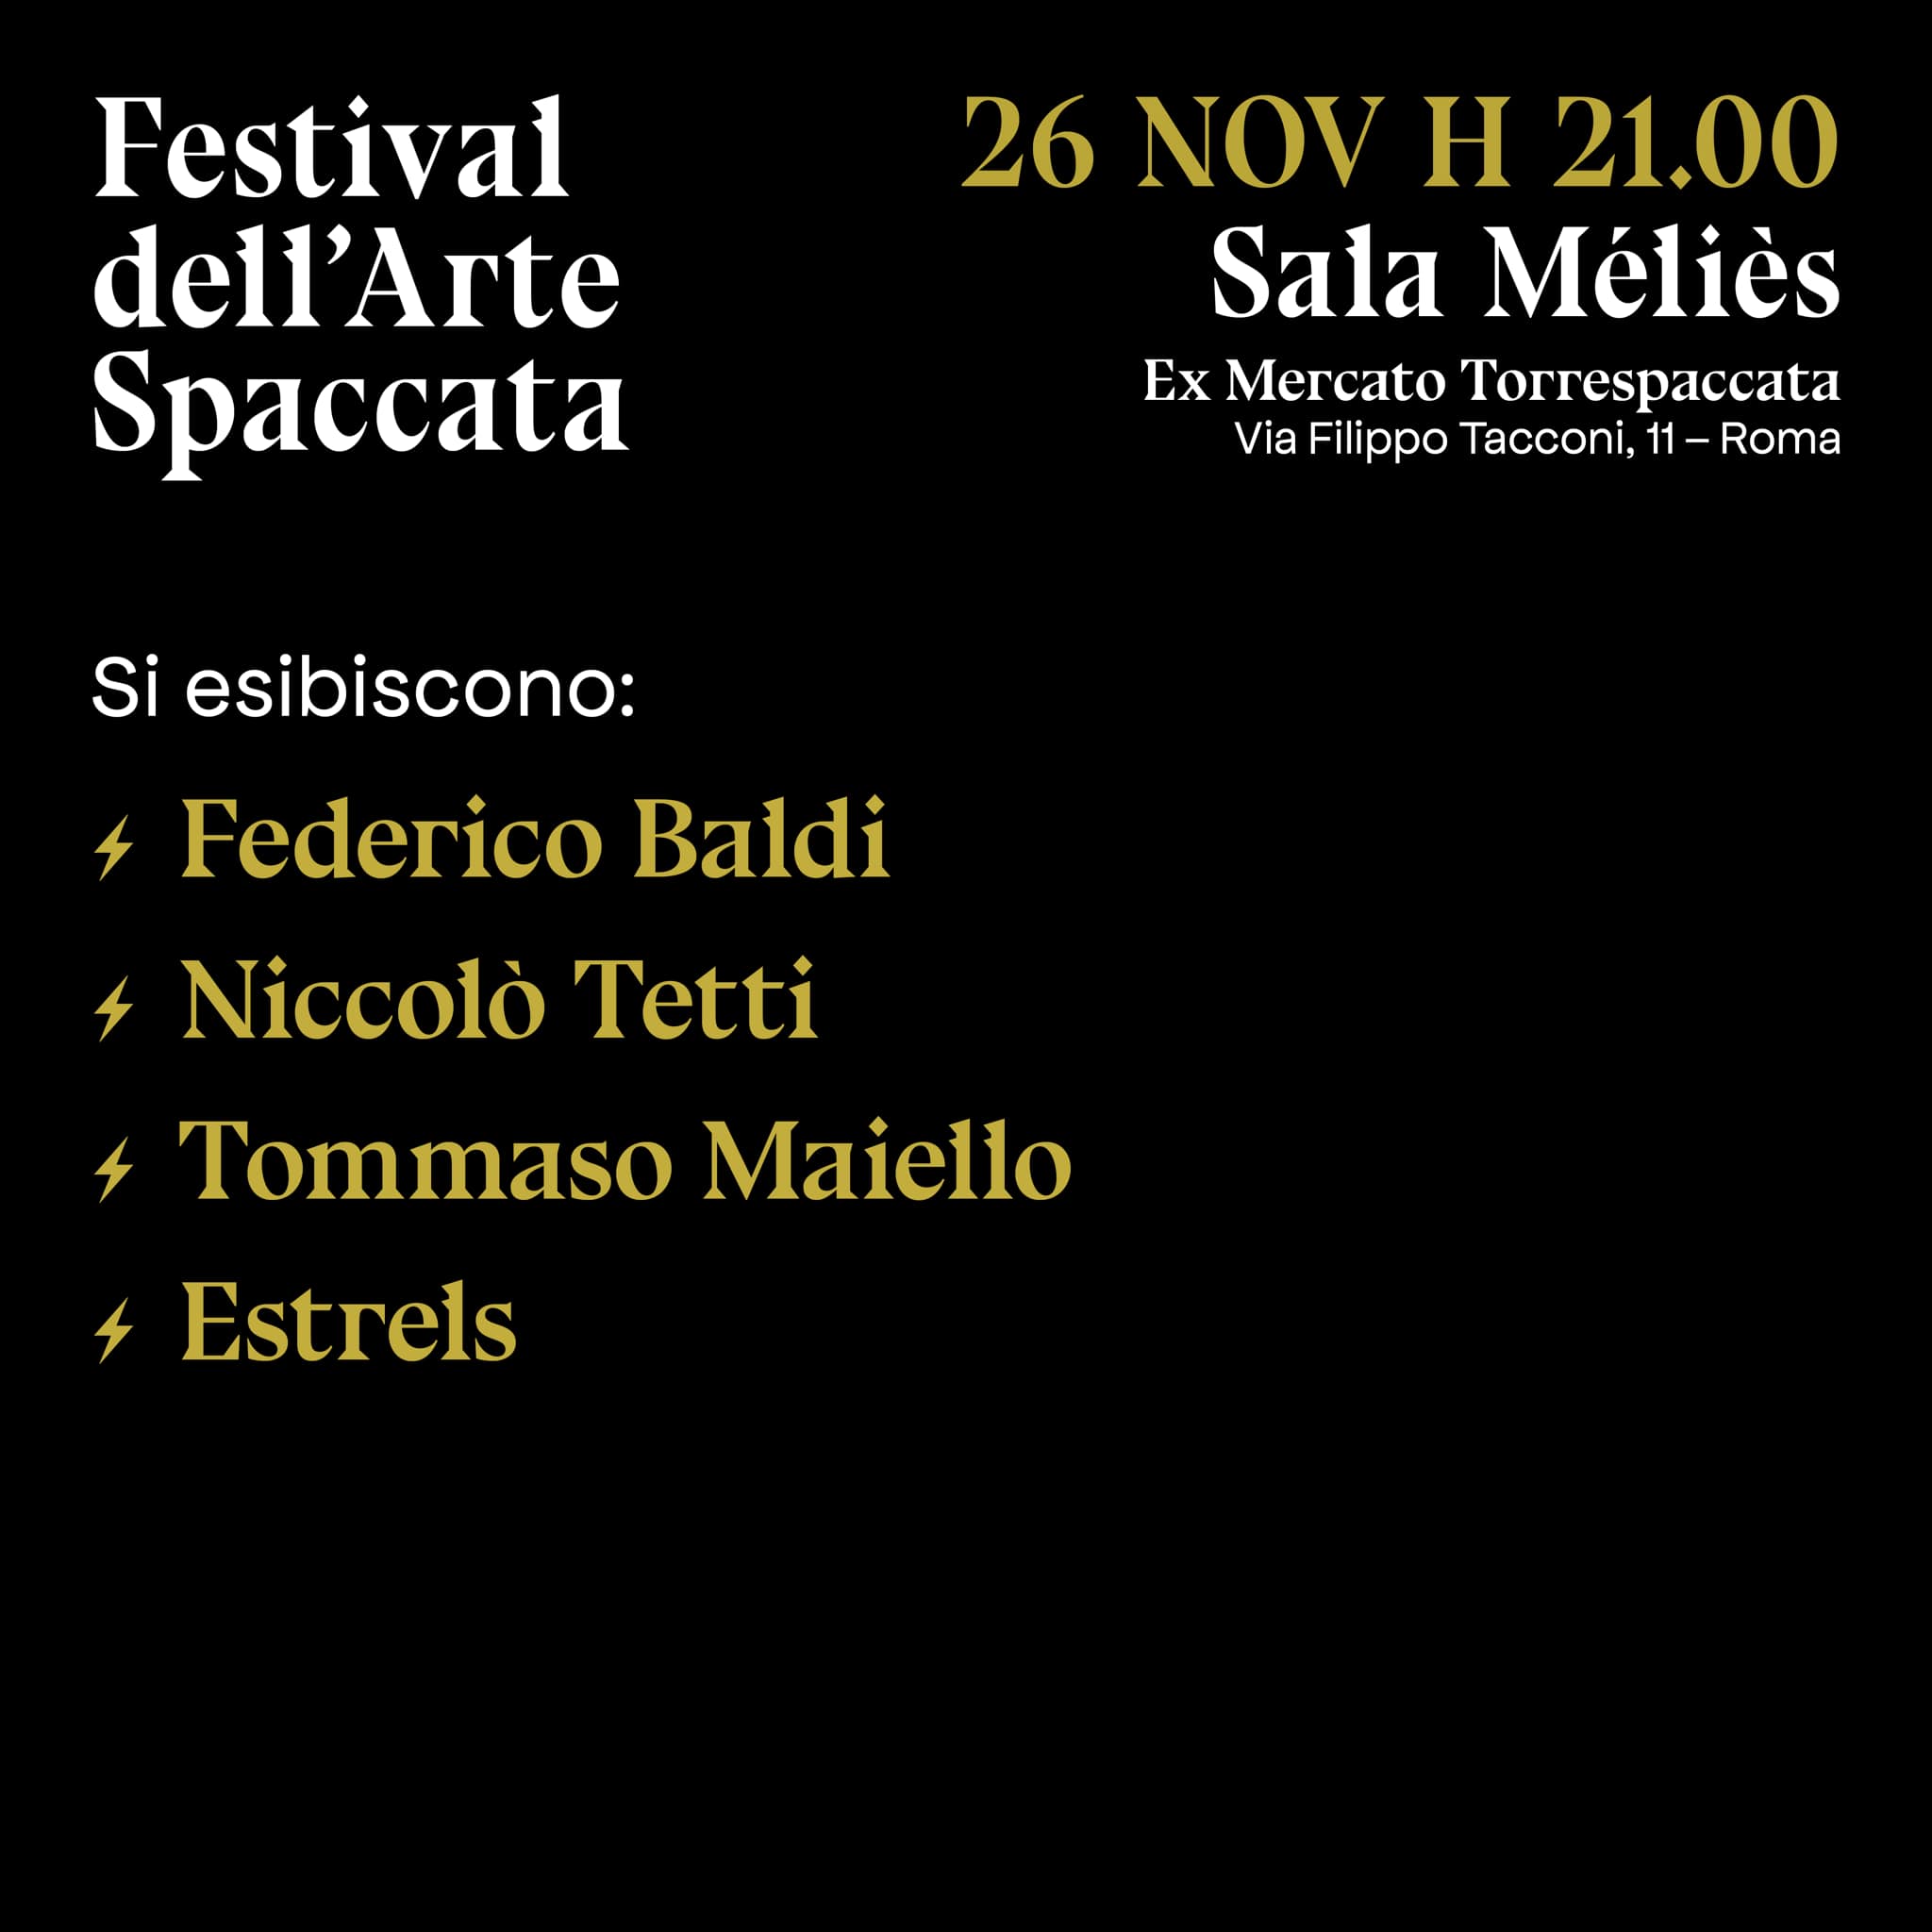 Festival dell'Arte Spaccata, Arti visive e Musica, Artisti, 26 novembre 2021